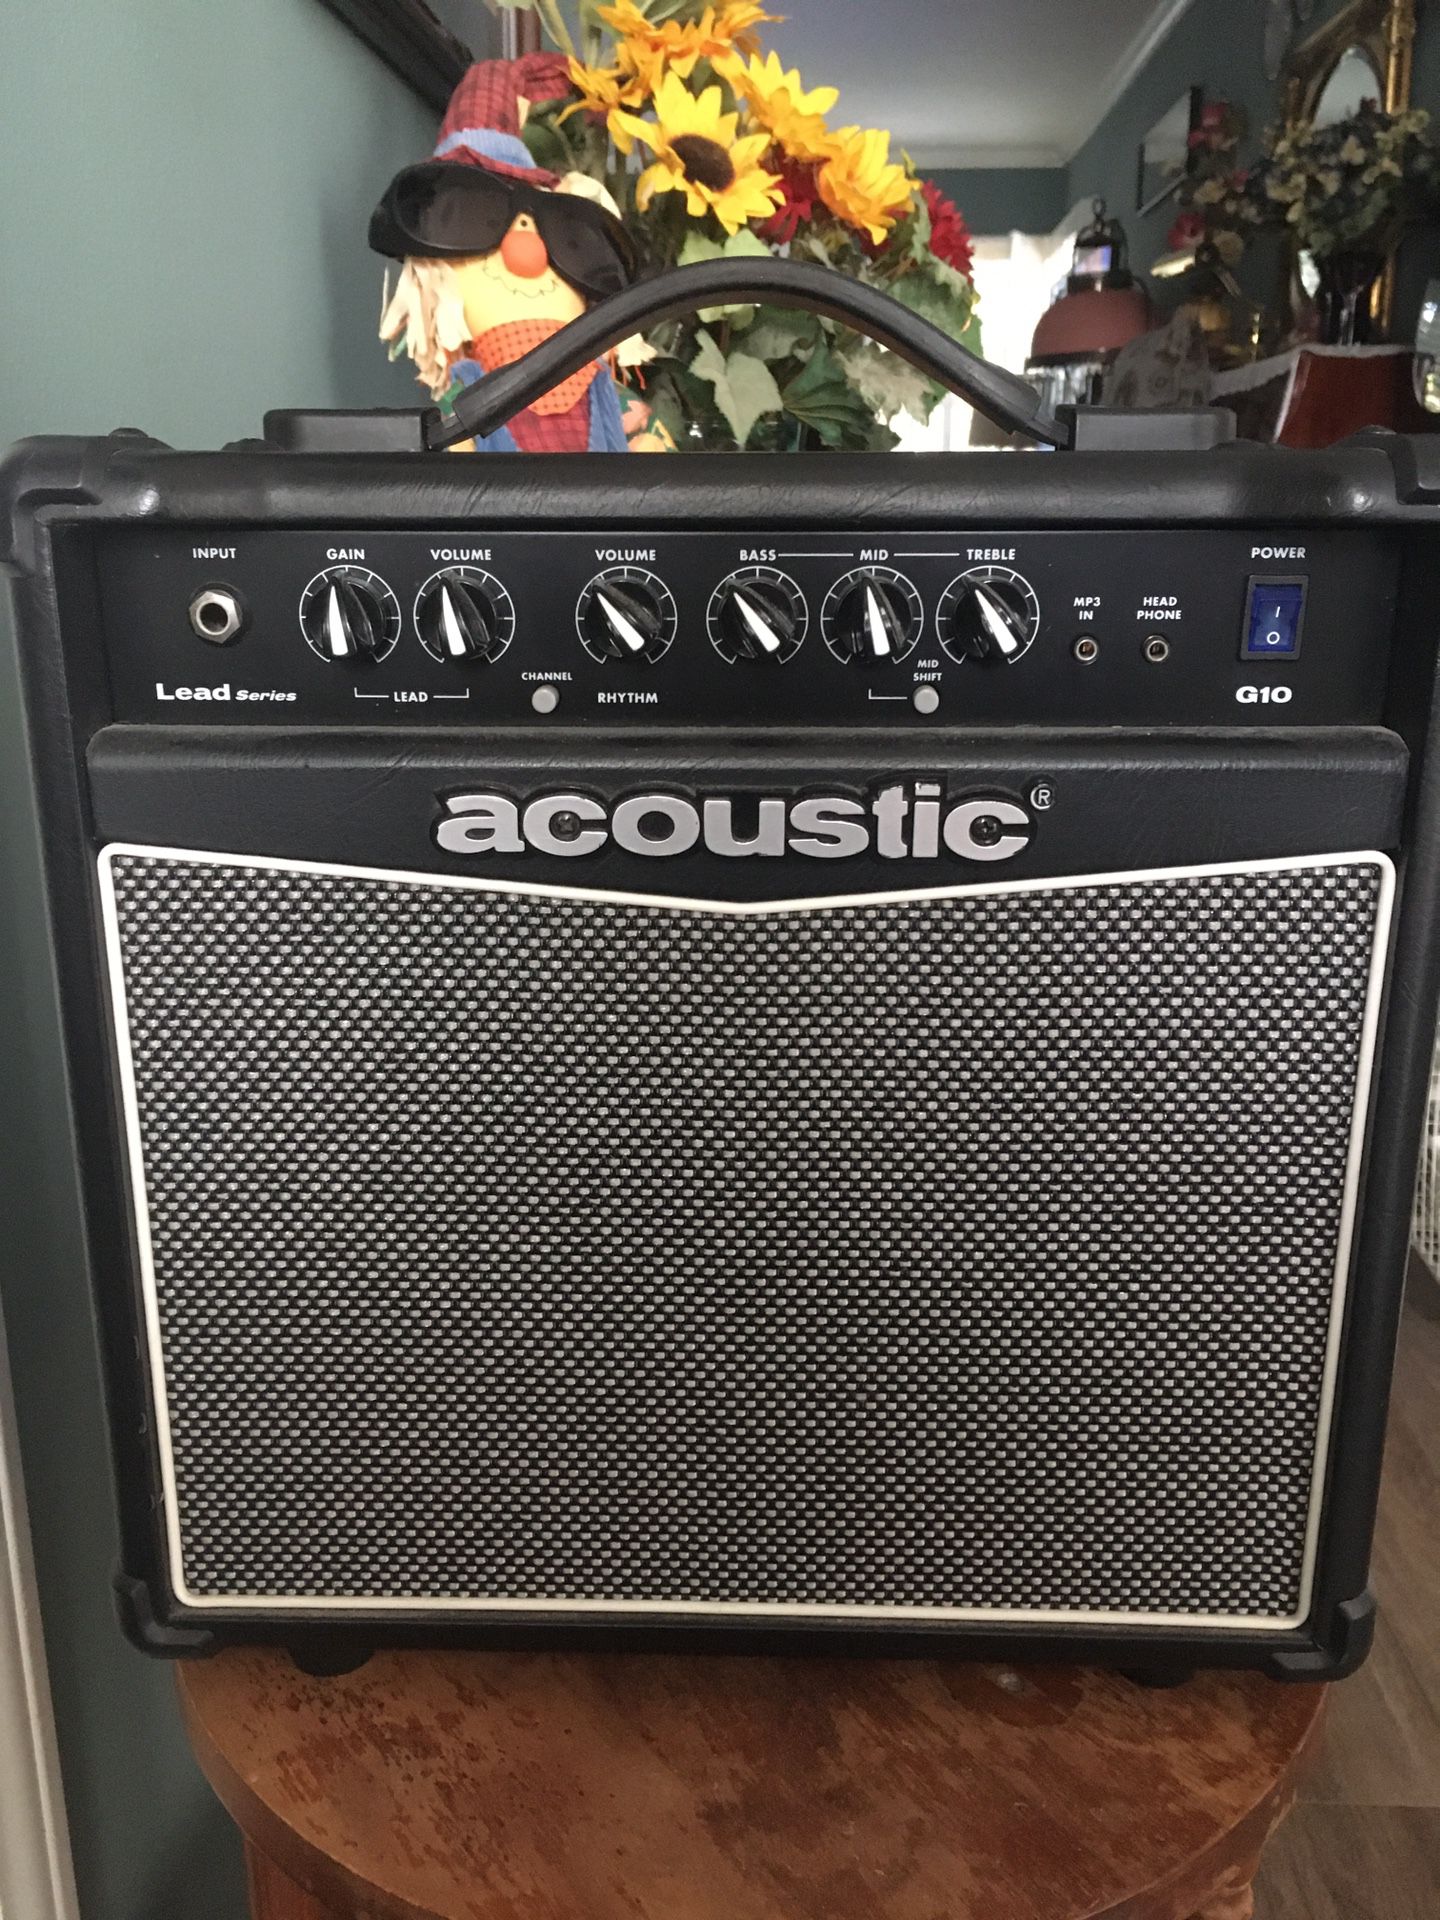 Acoustic G10 practice amplifier